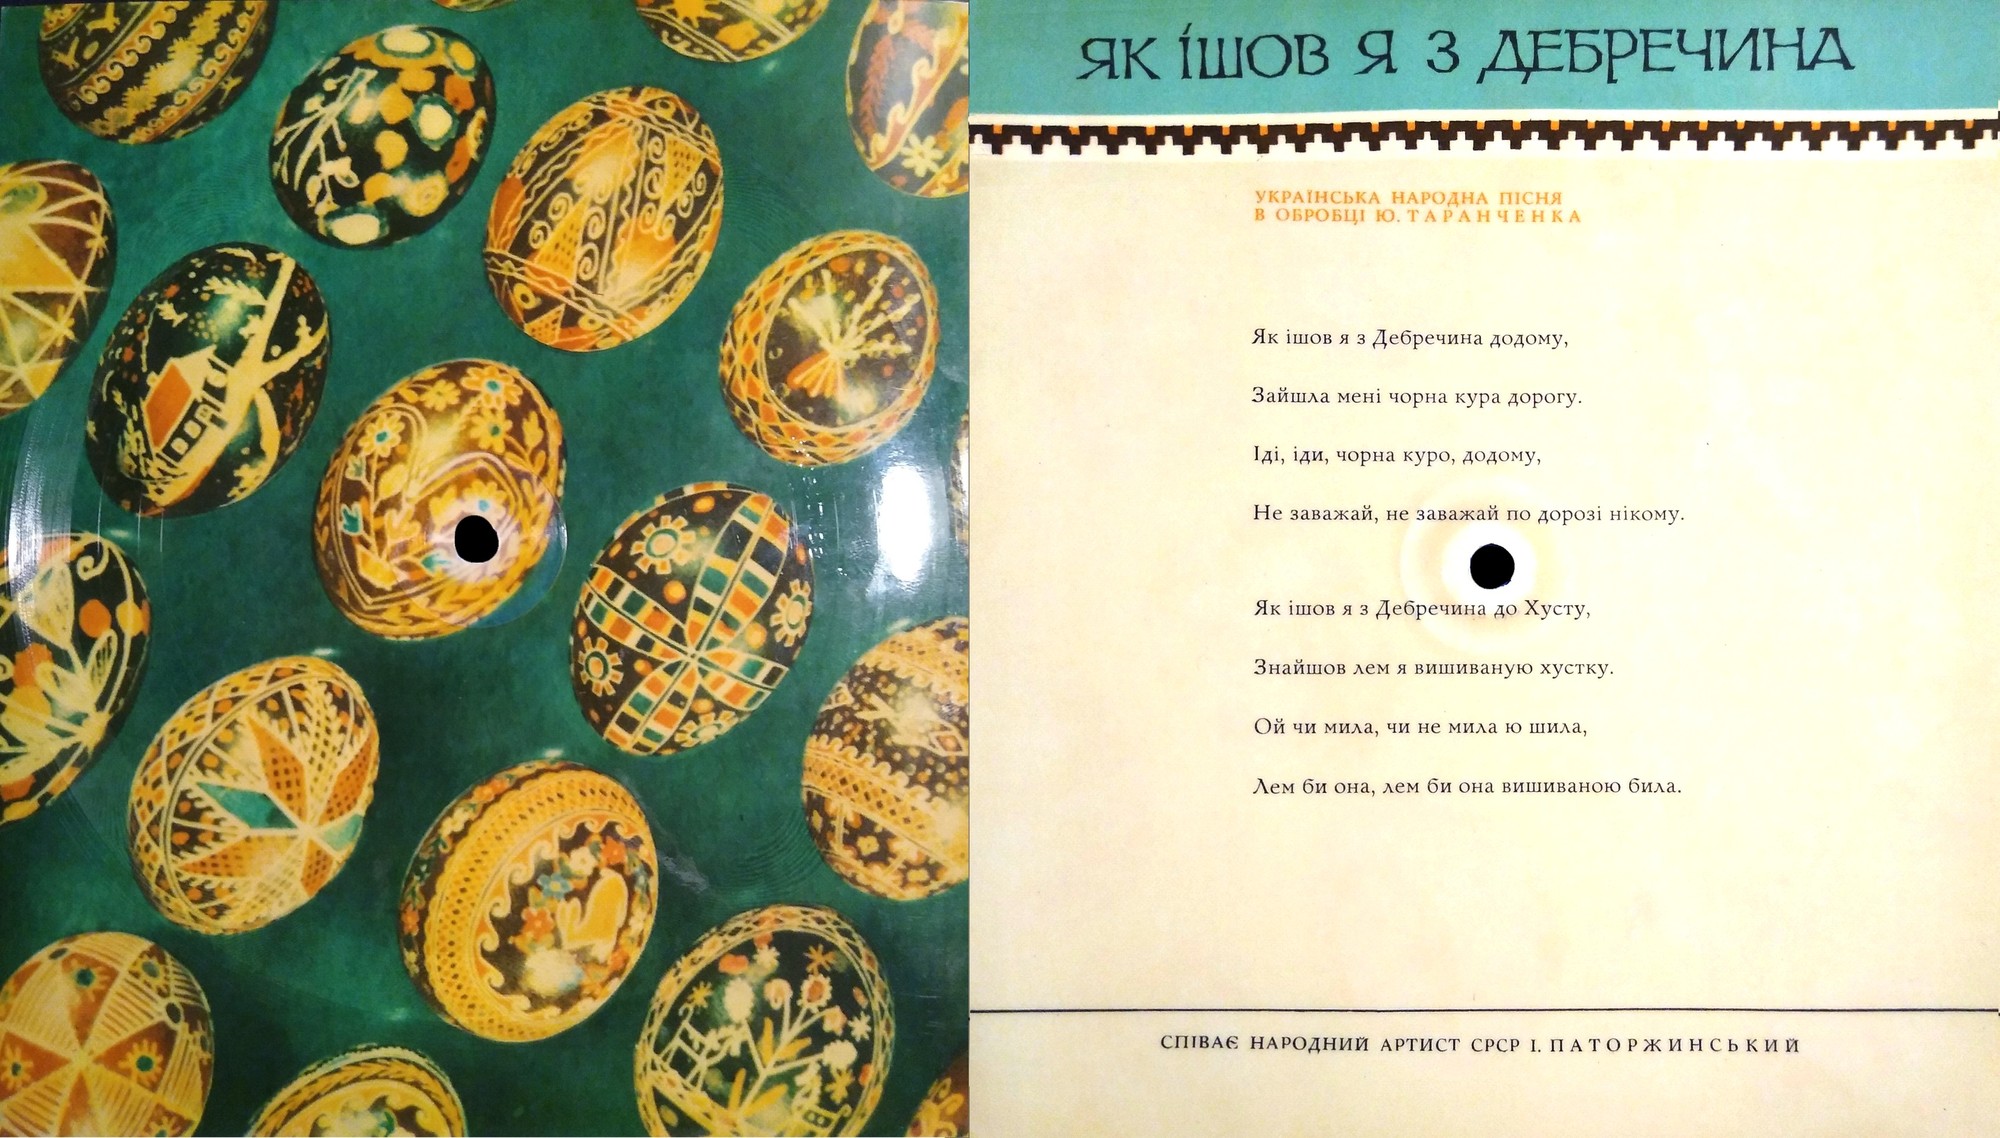 Звуковой альбом "Соловьиная Украина" (сувенир) - 1966